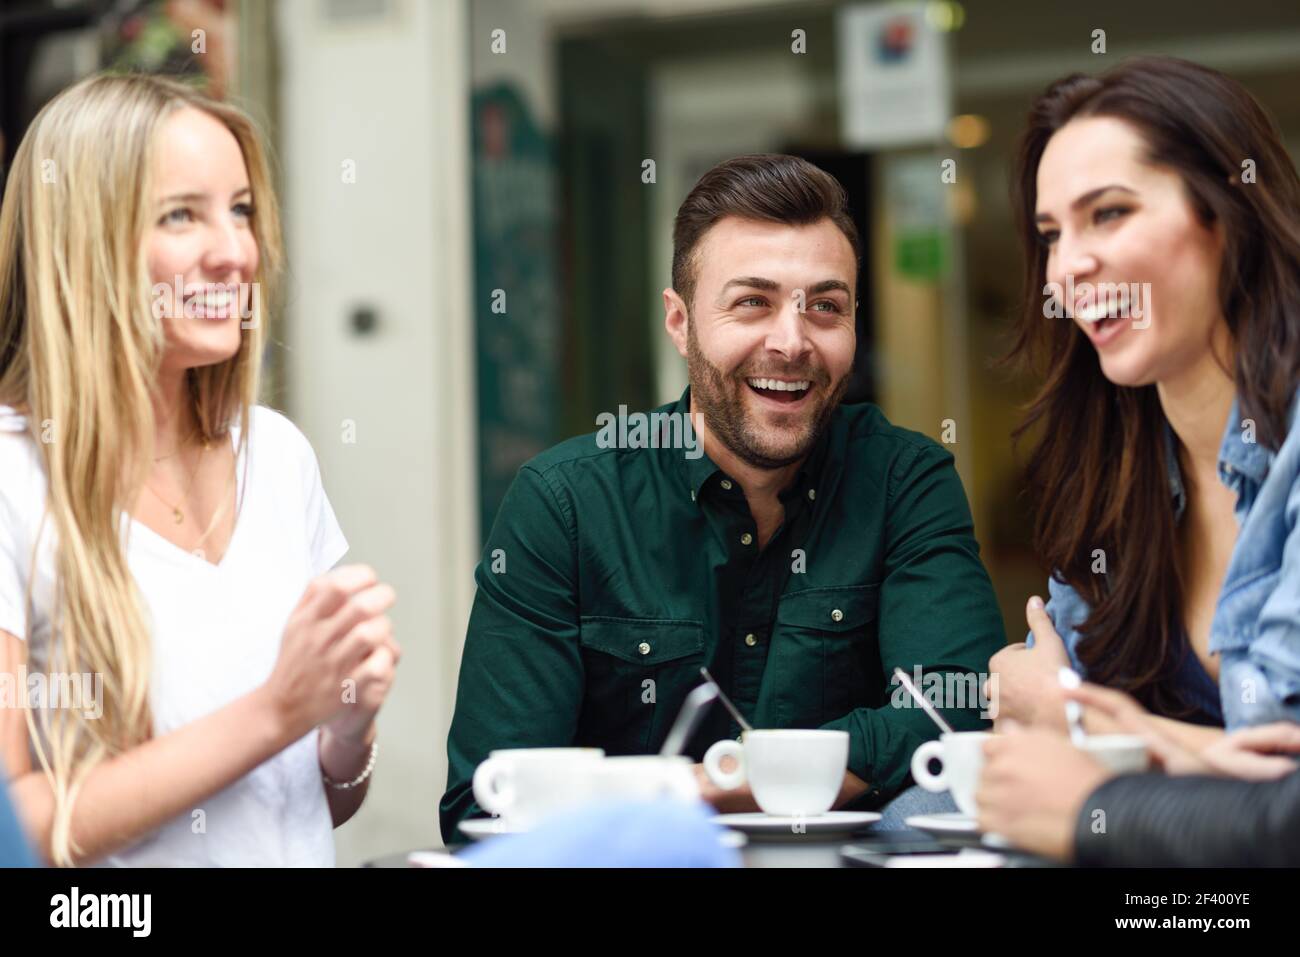 Gruppo multirazziale di amici che hanno un caffè insieme. Due donne e un uomo al caffè, parlando, ridendo e godendo il loro tempo. Stili di vita e concetti di amicizia con modelli di persone reali Foto Stock